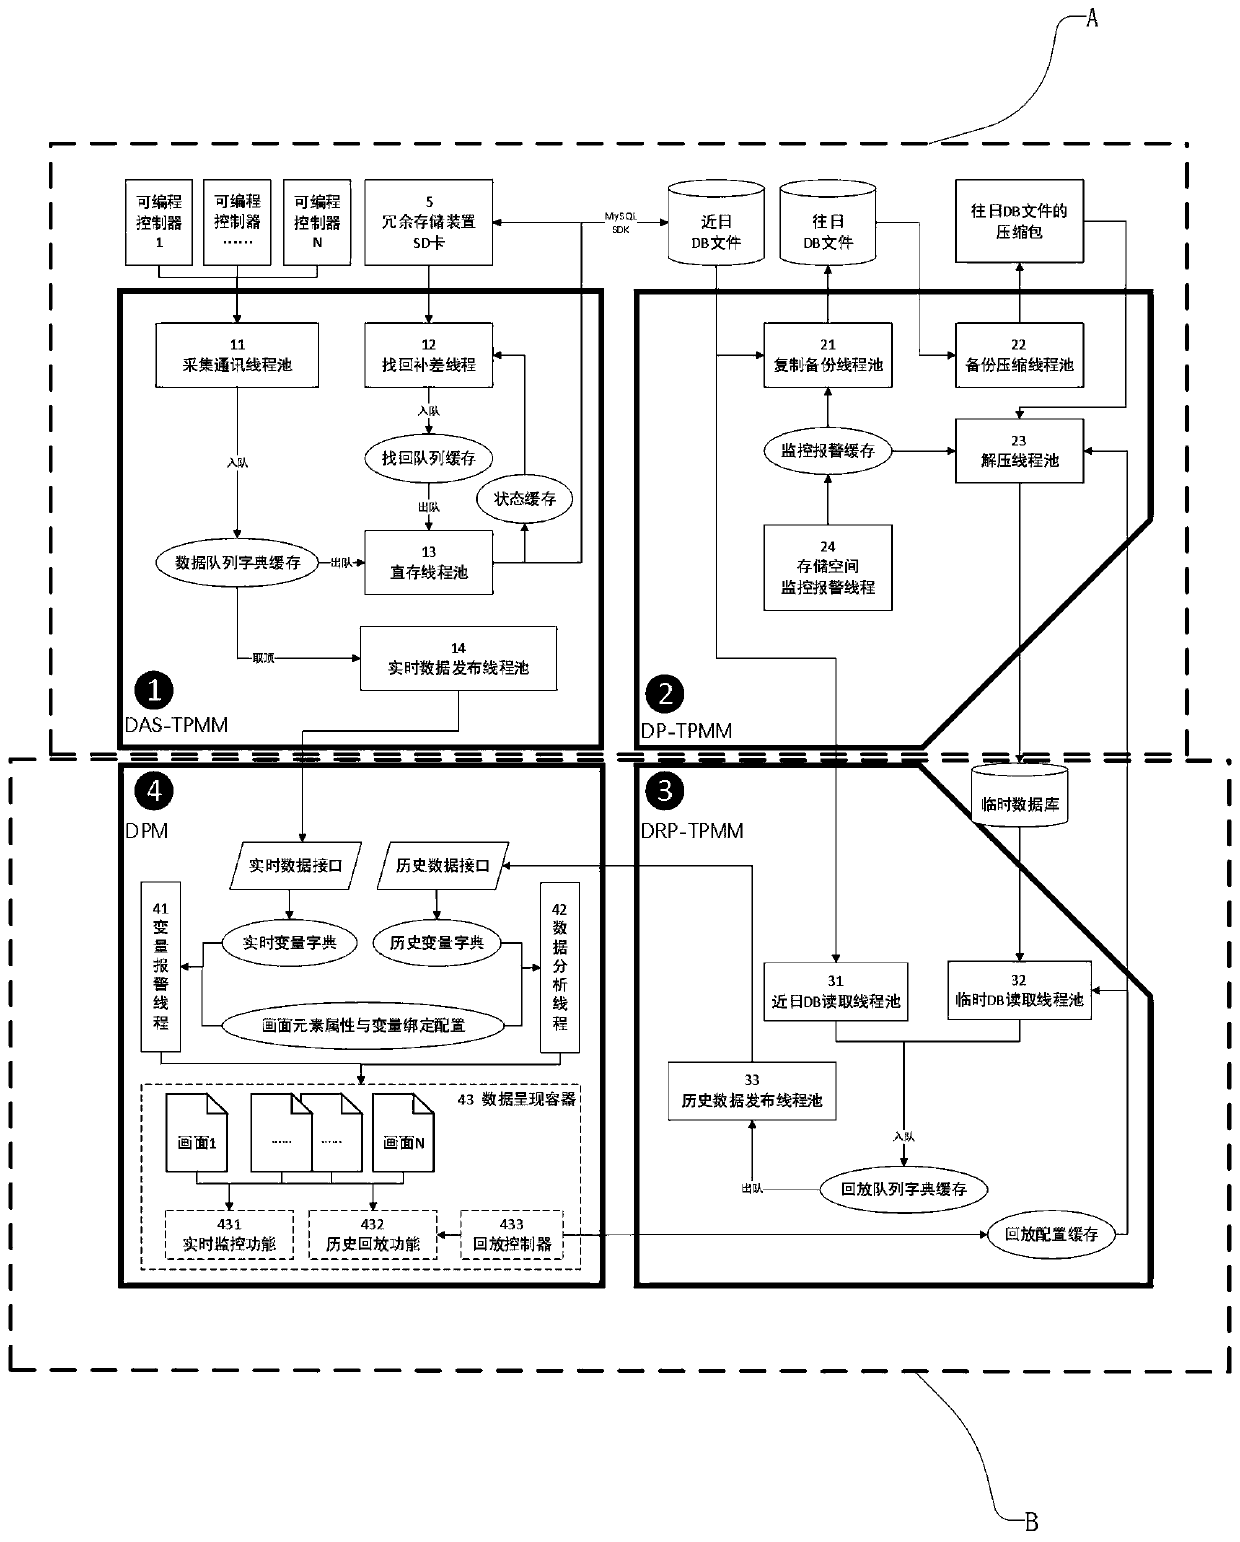 Multi-threading bridge crane data acquiring and processing system and method